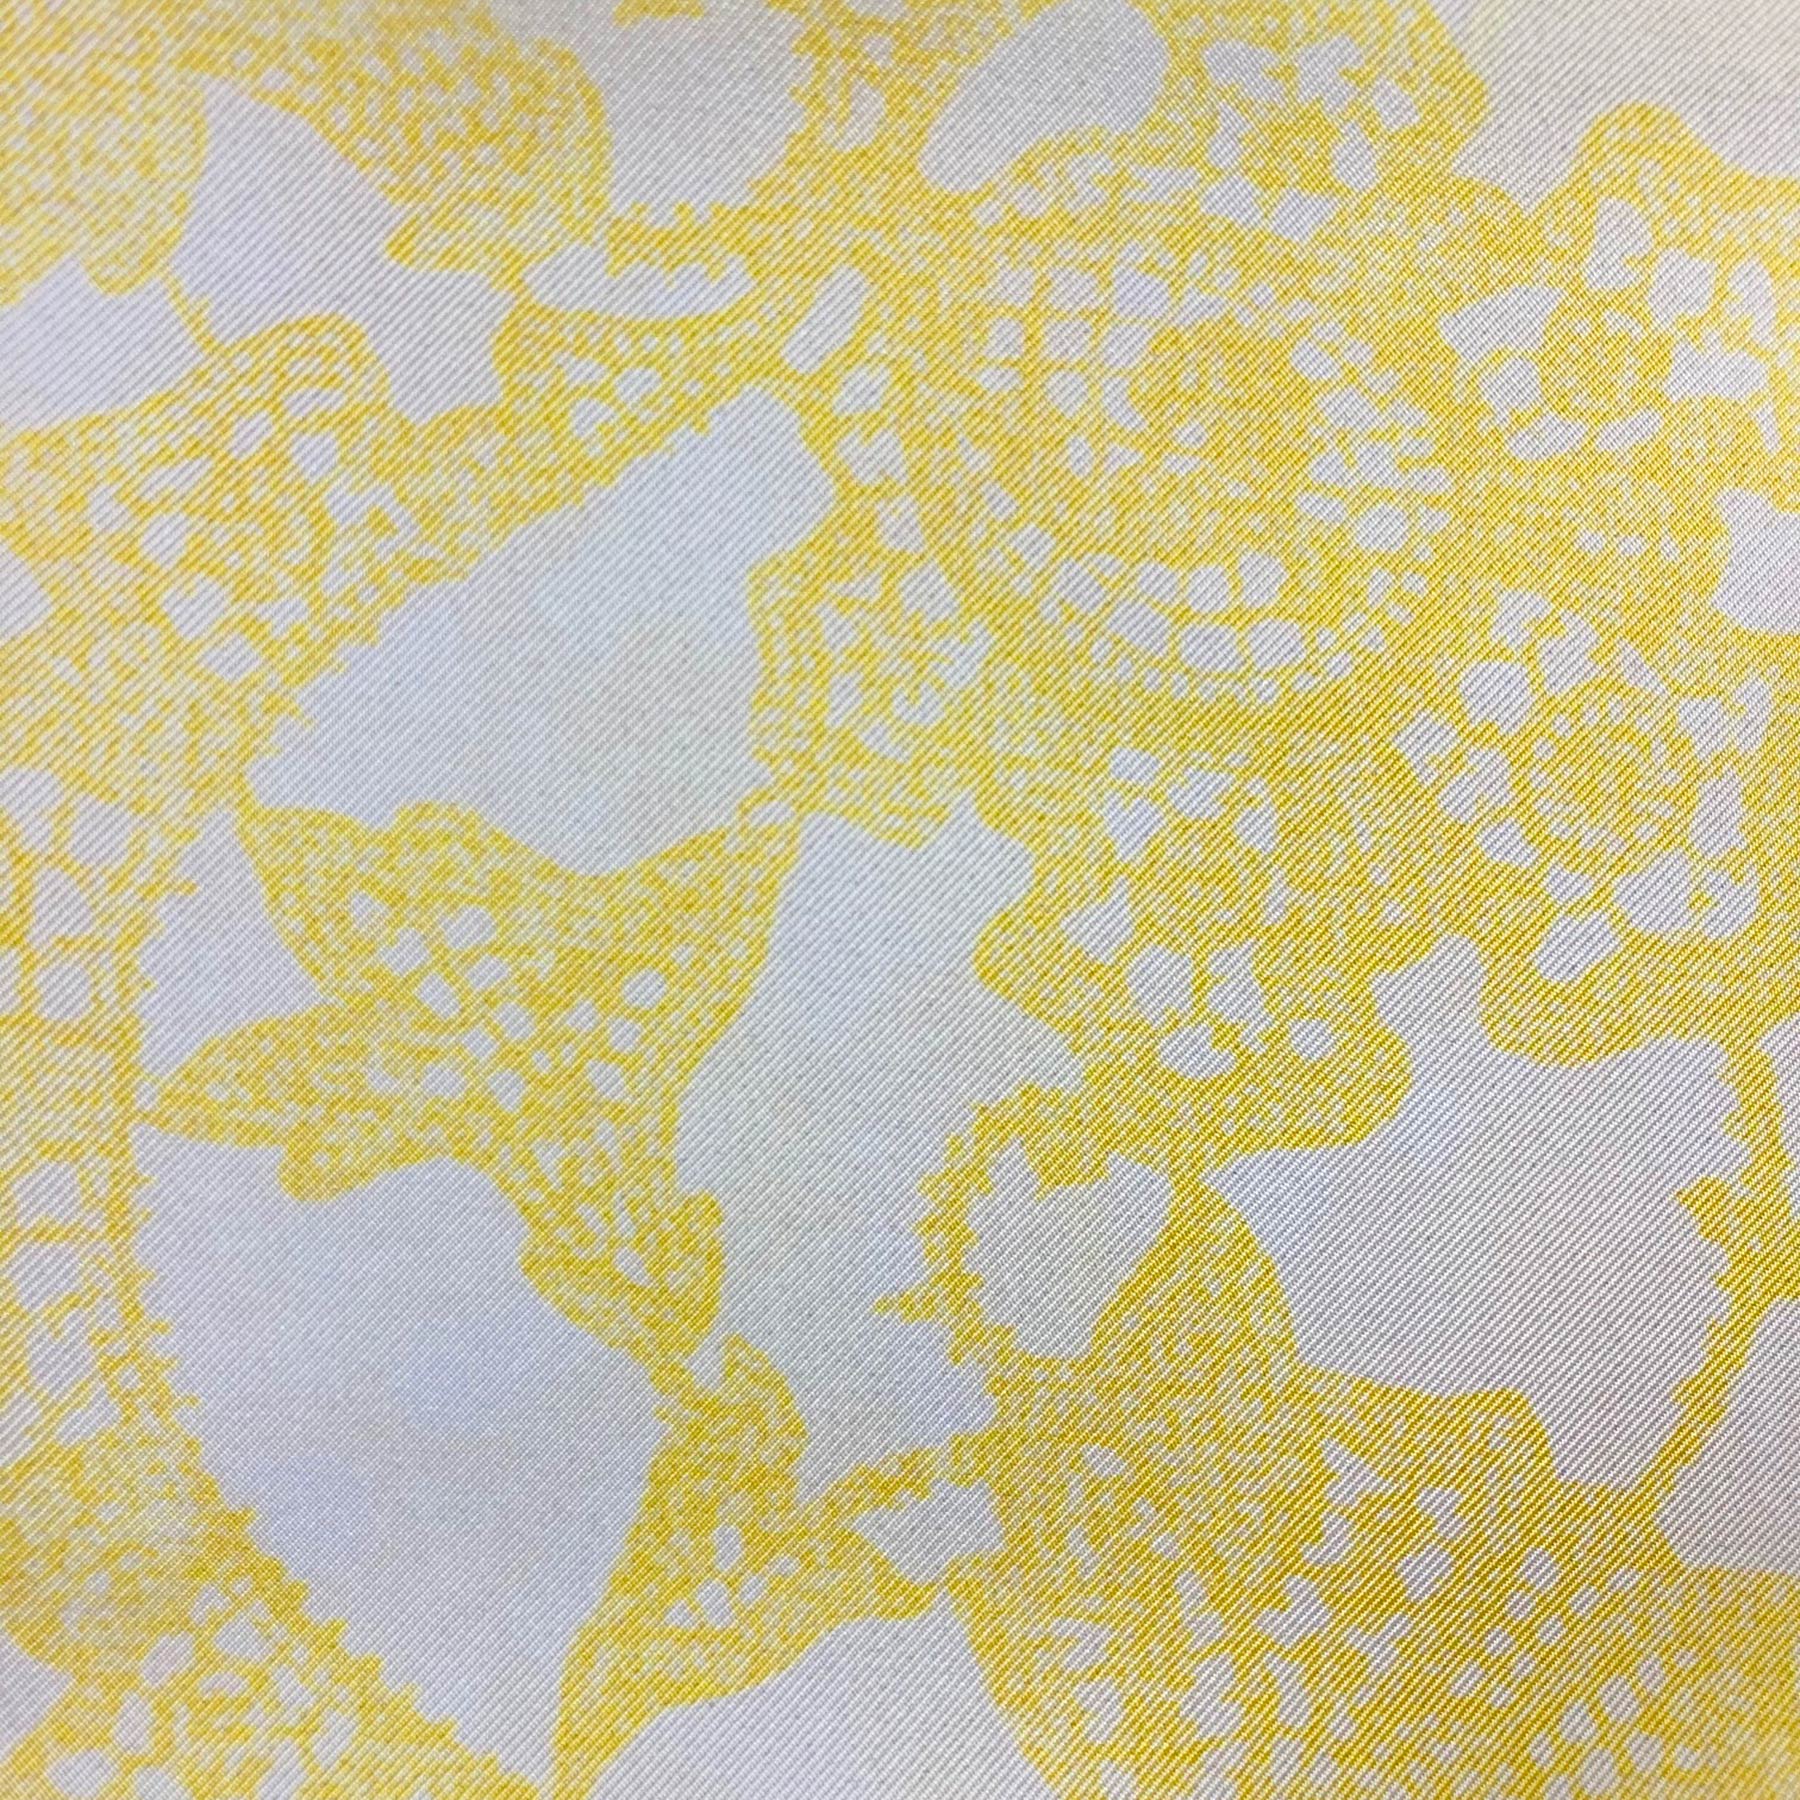 Ermanno Scervino Scarf White Yellow Ornamental Design - 27" Square Twill Silk Scarf